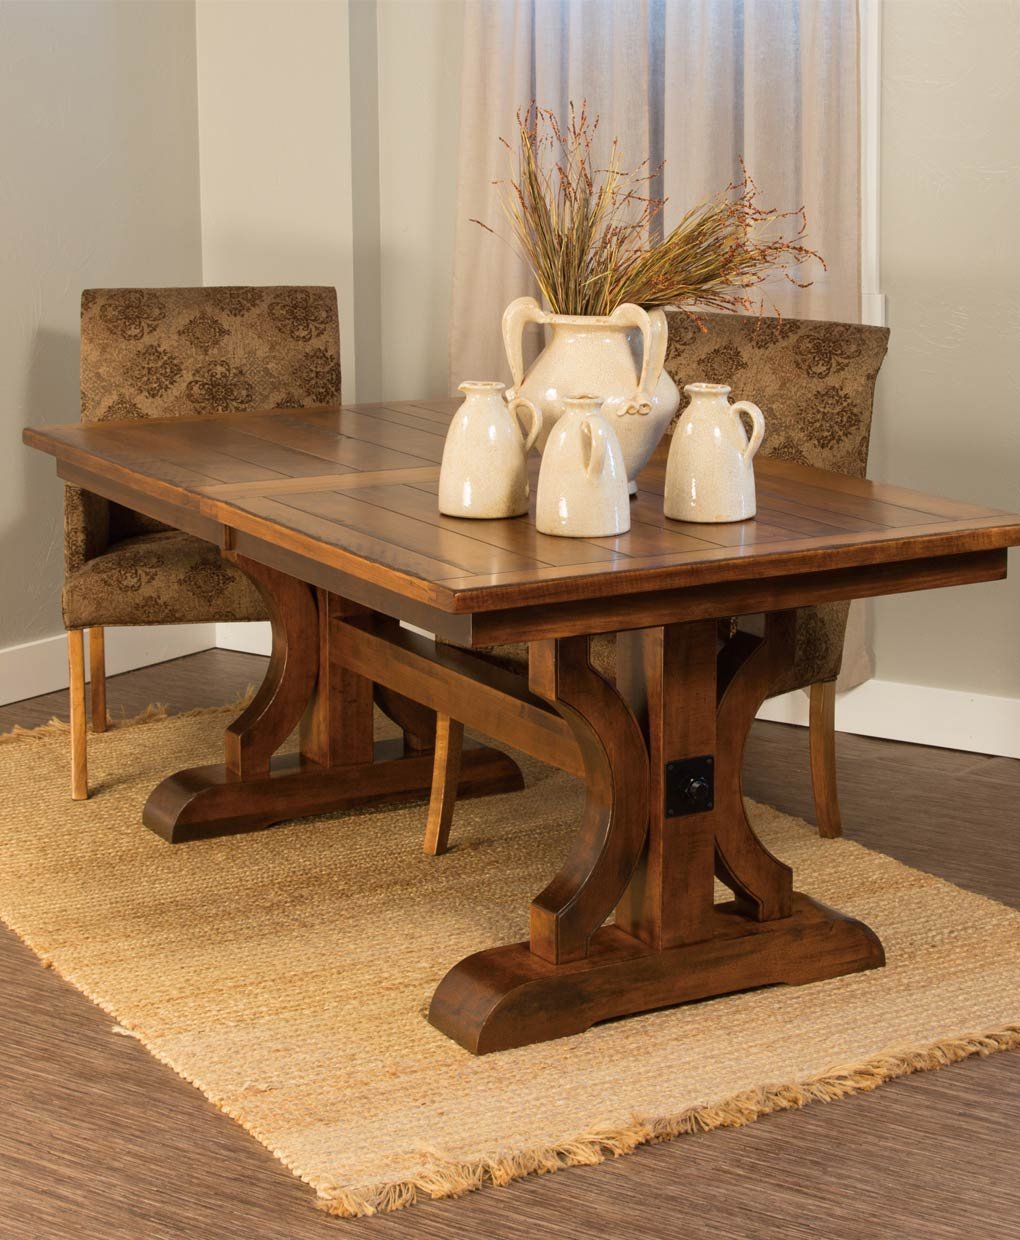 Купить стол готовый. Обеденный стол Orlando Wood Table. Деревянный столик. Красивая деревянная мебель. Столик из дерева.